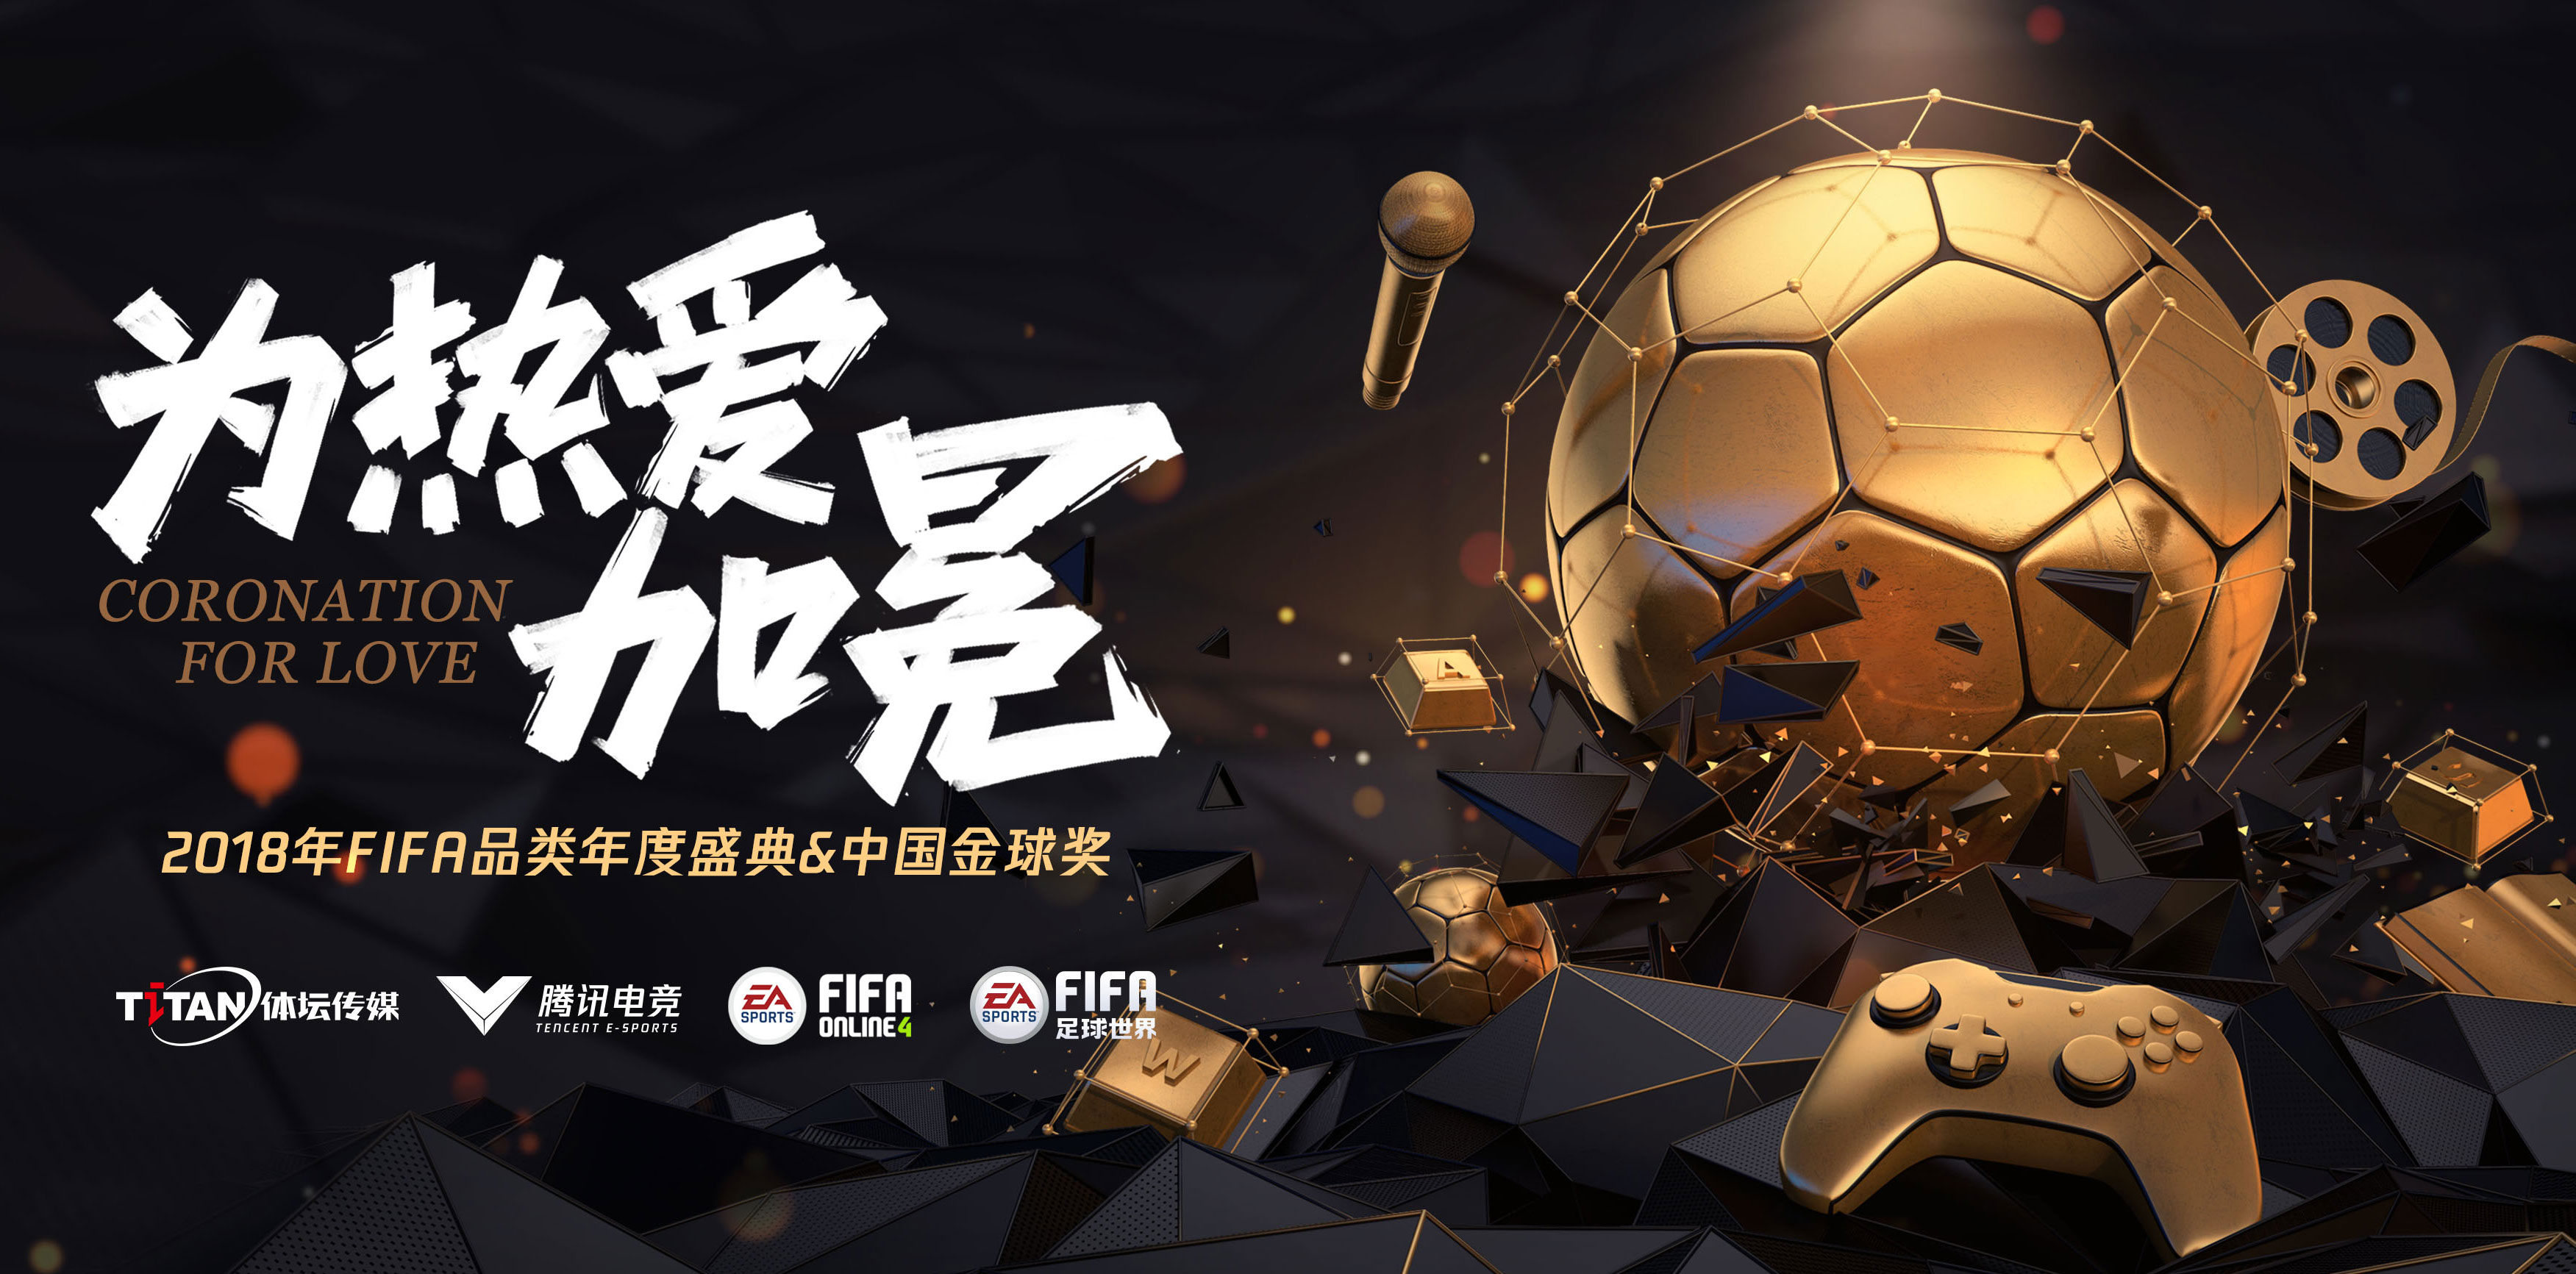 凝聚时代热爱，FIFA电竞打造中国足球文化新浪潮